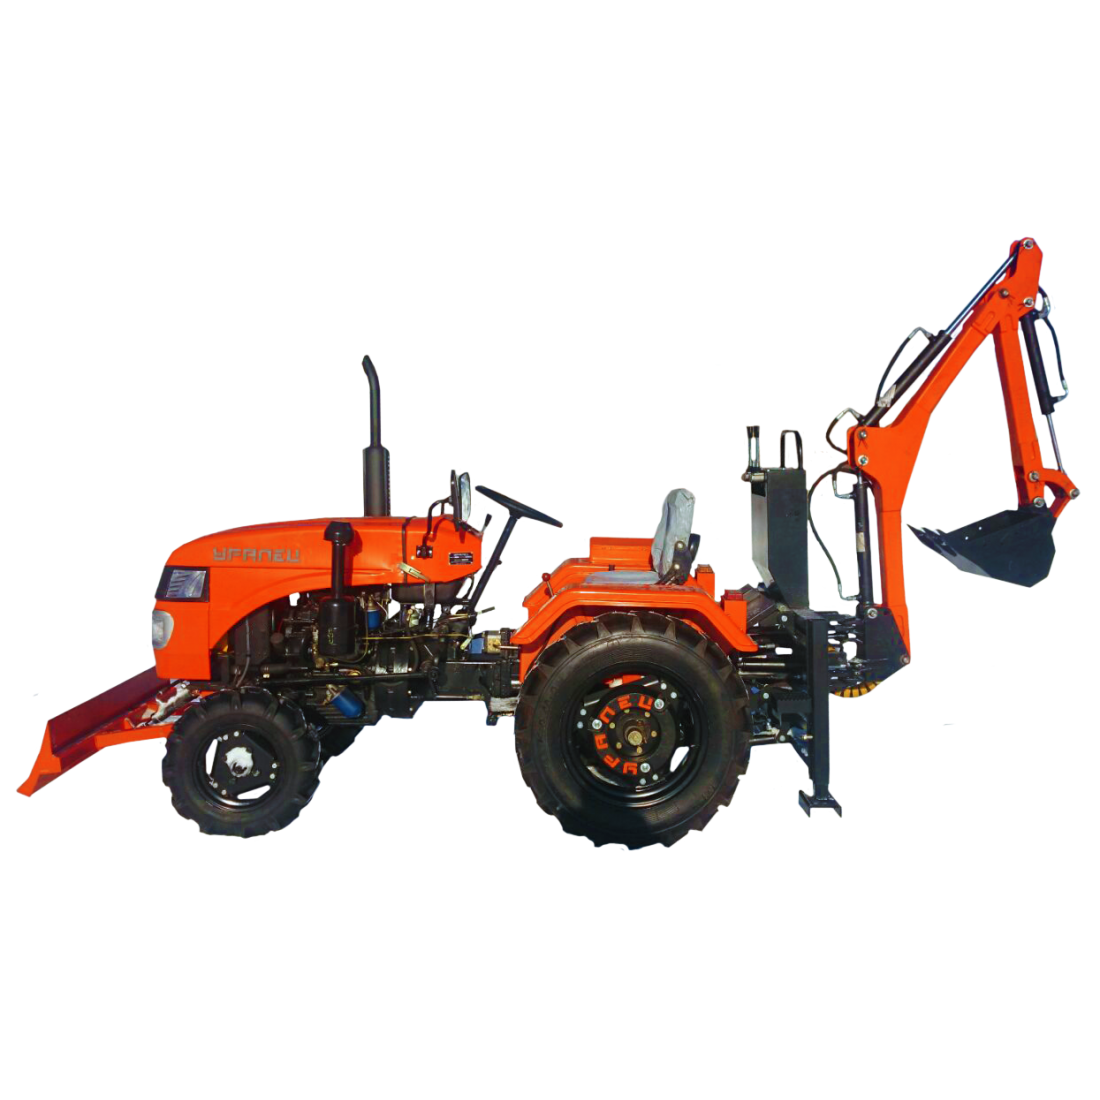 Минитрактор уралец: трактор, 220, отзывы владельцев, 180, технические характеристики, навесное оборудование, цена, аналоги